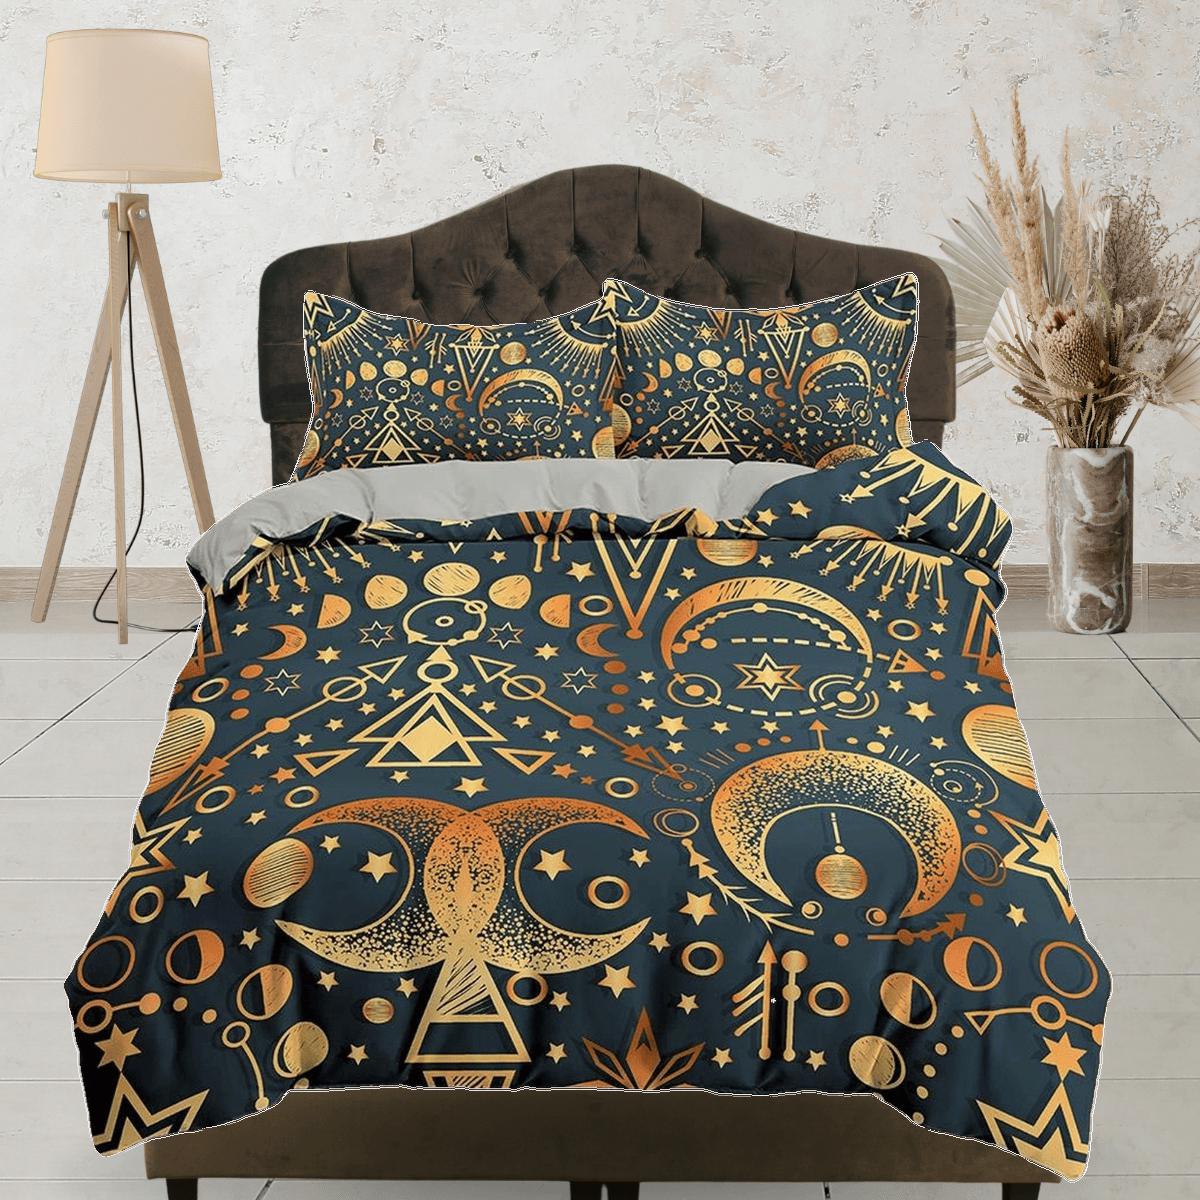 daintyduvet Celestial bedding gold alchemist, witchy decor dorm bedding, aesthetic duvet, boho bedding set full king queen, astrology gifts, gothic art